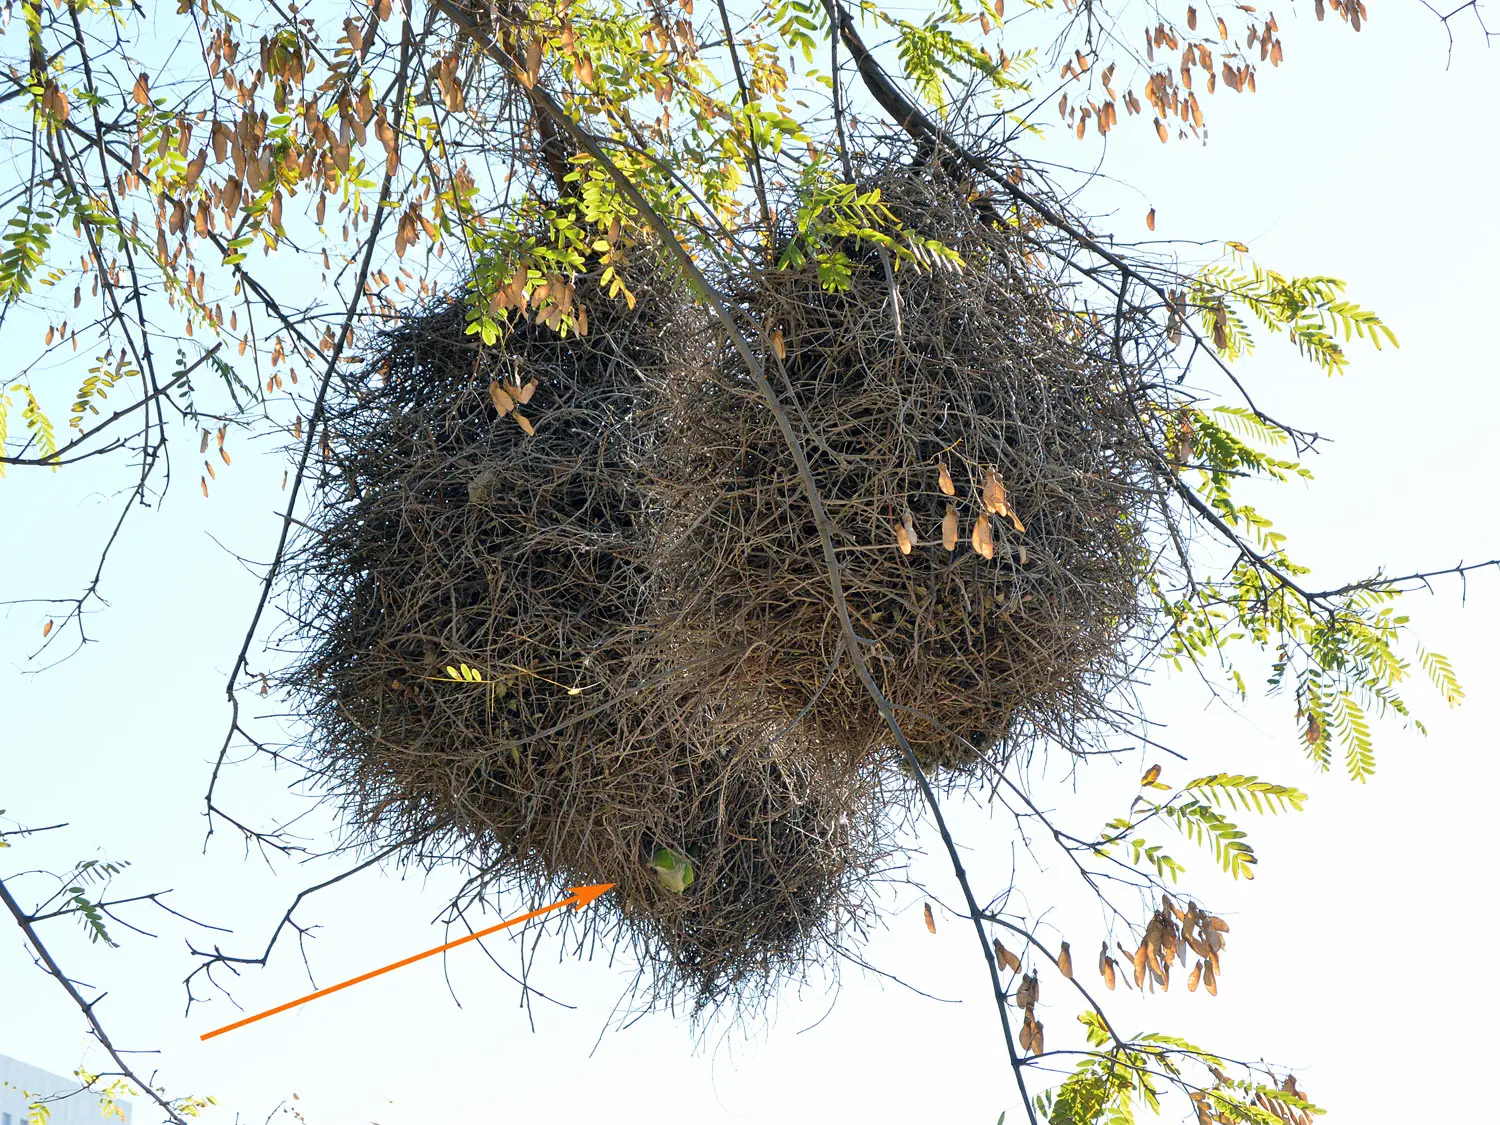 al cuanto tiempo las aves cotorras dejan su nido - Que darle de comer a una cotorra argentina bebé